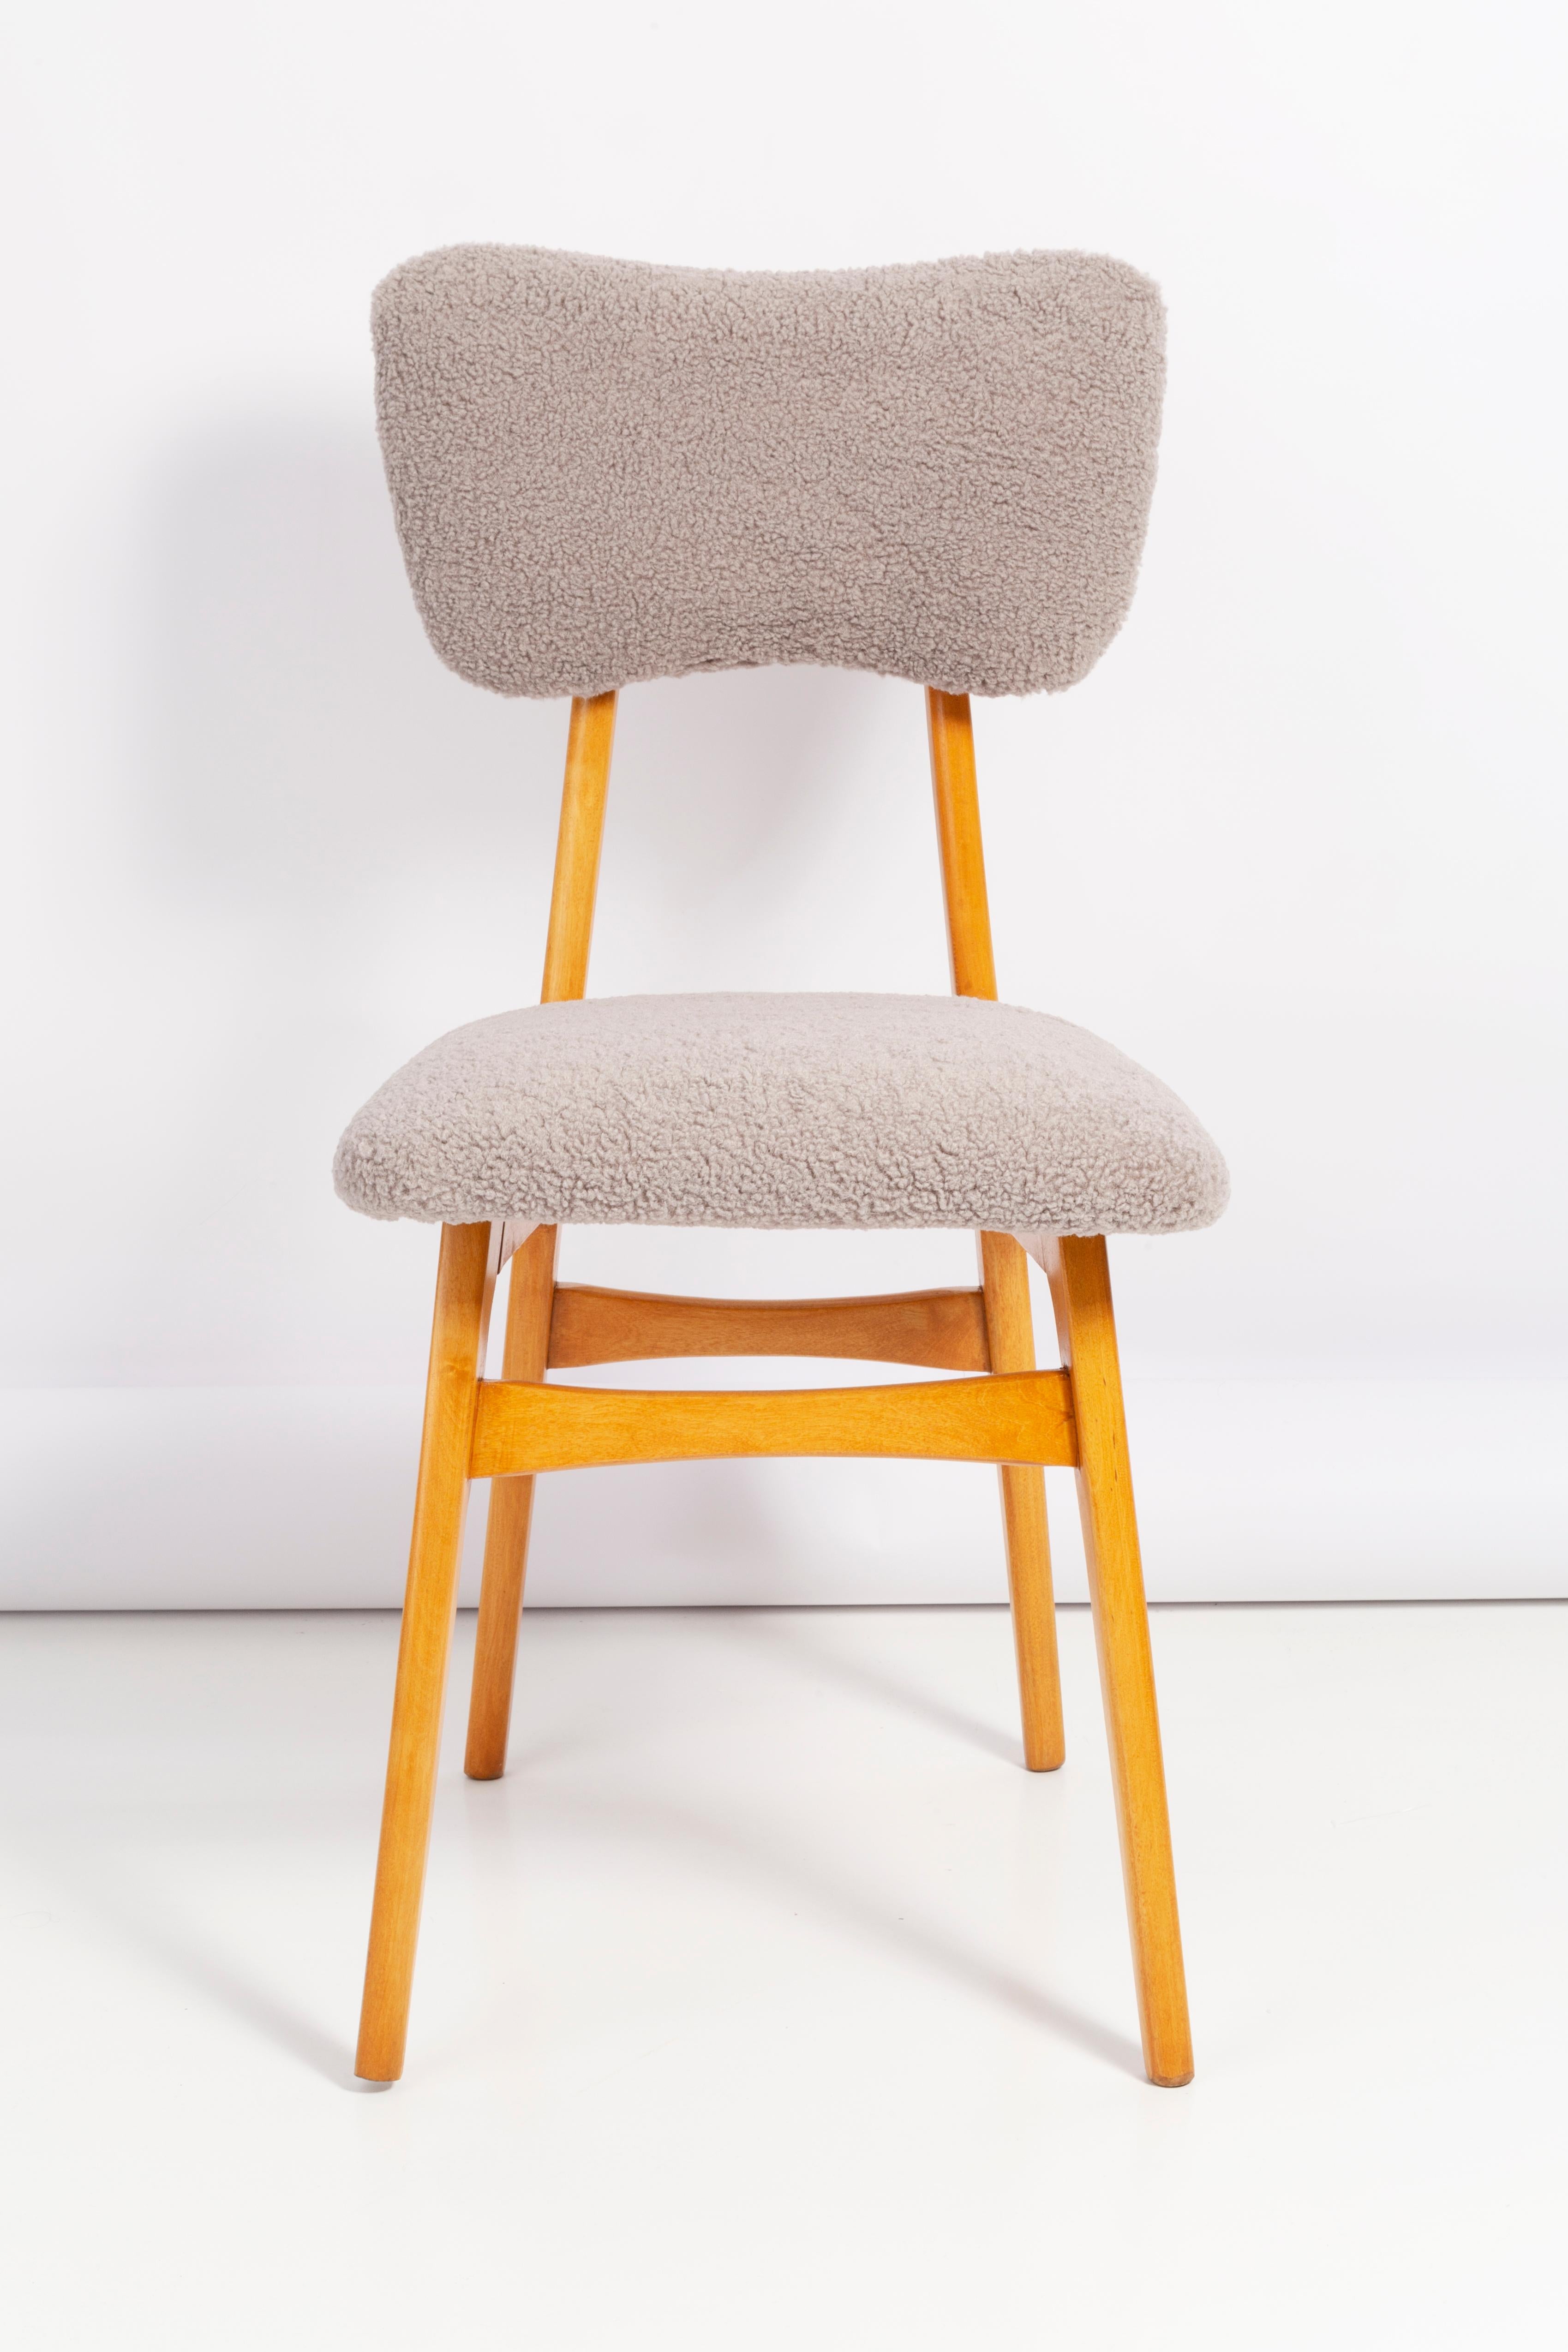 Chaise conçue par le professeur Rajmund Halas. Fabriqué en bois de hêtre. Le fauteuil a subi une rénovation complète de la tapisserie et les boiseries ont été rafraîchies. L'assise et le dossier sont habillés d'un tissu bouclé gris, durable et